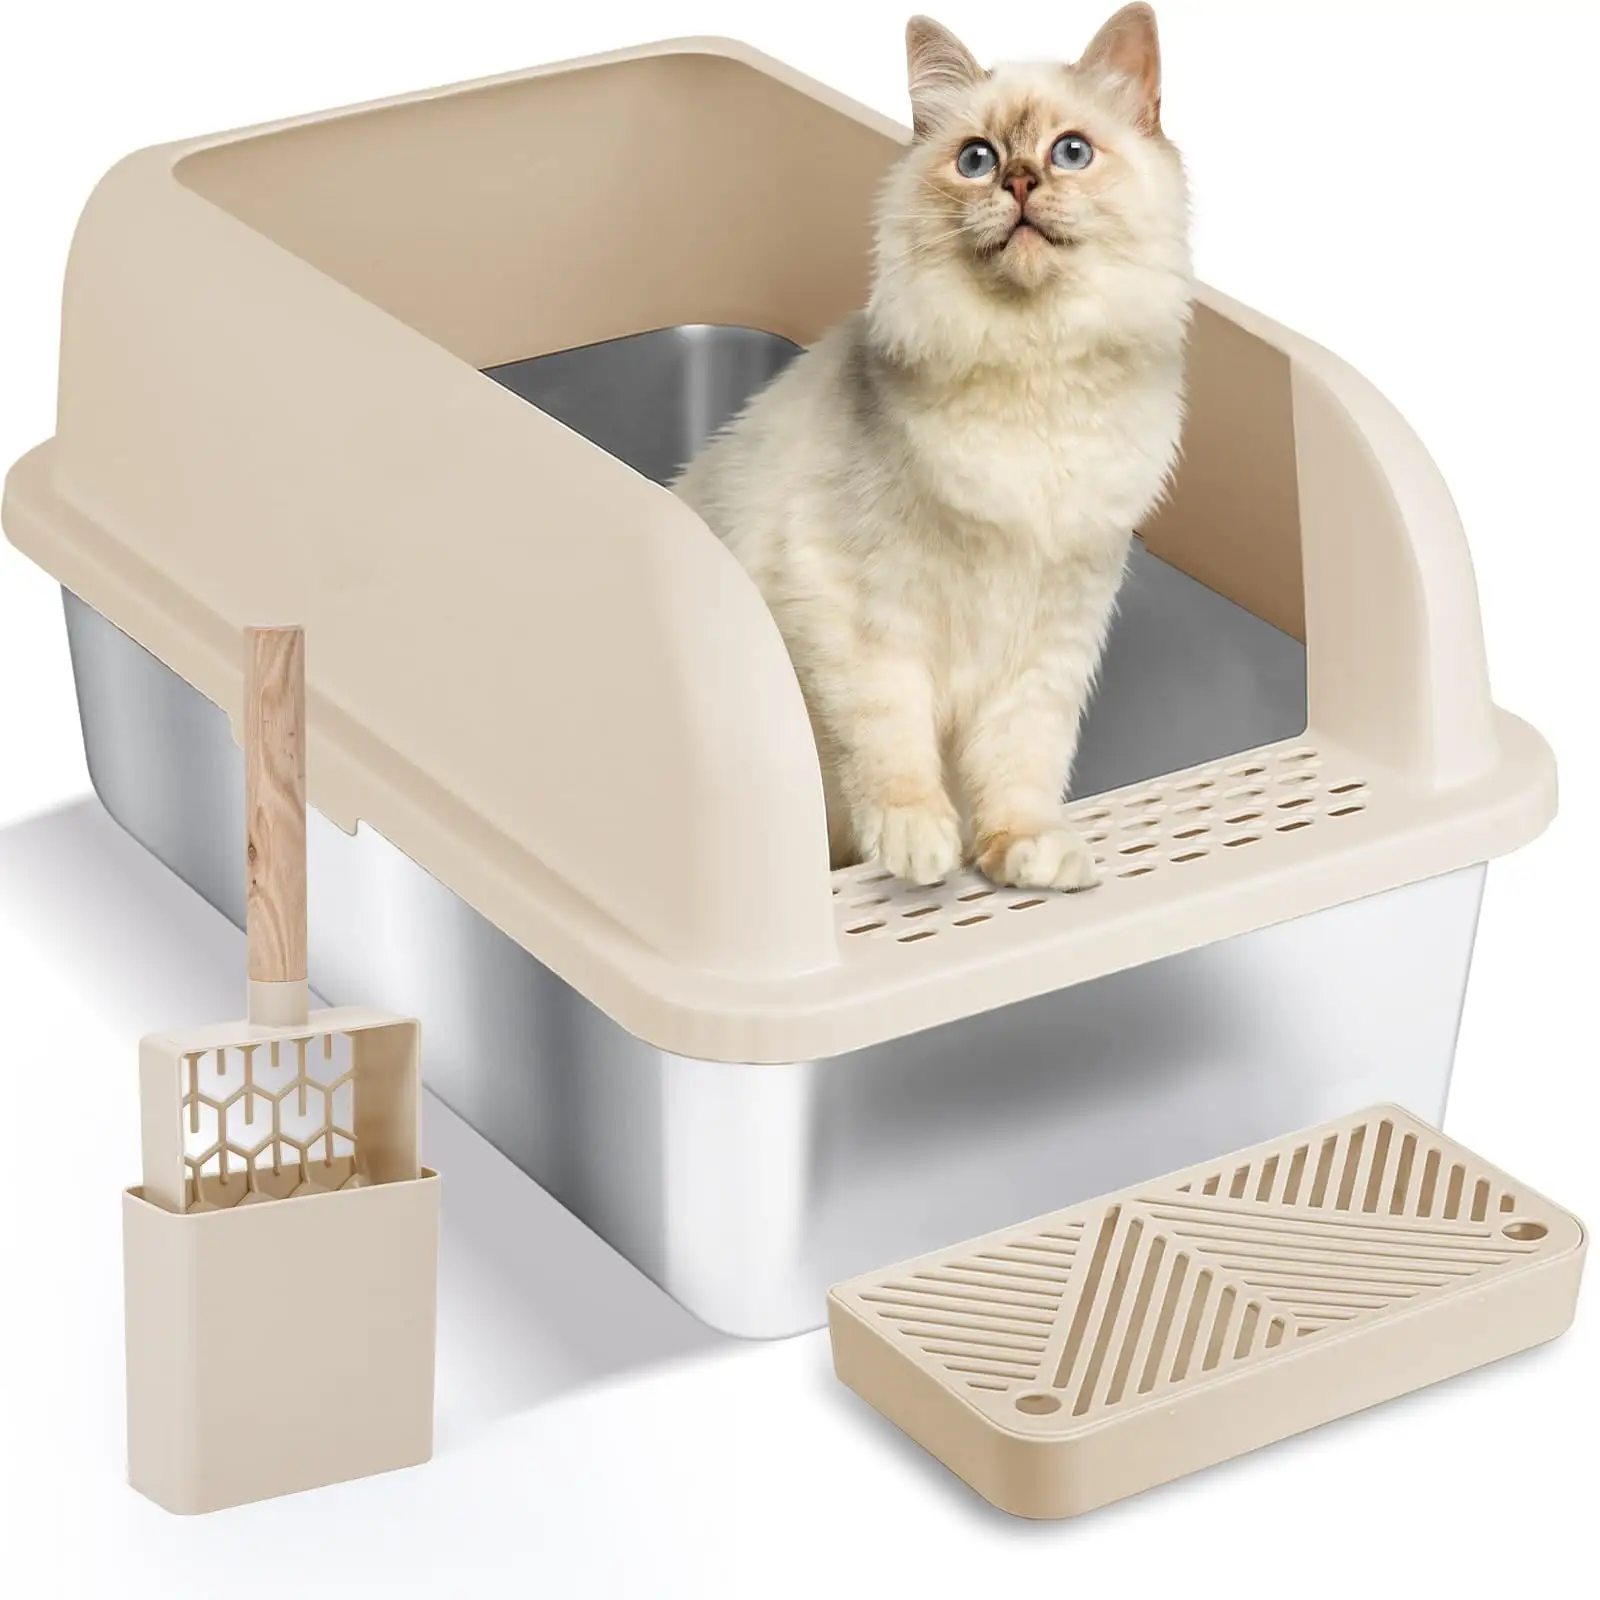 ZMaker очень большой ящик для кошачьих туалетов из нержавеющей стали с высокой стенкой, легко очищается, закрытый ящик для кошачьих туалетов для больших